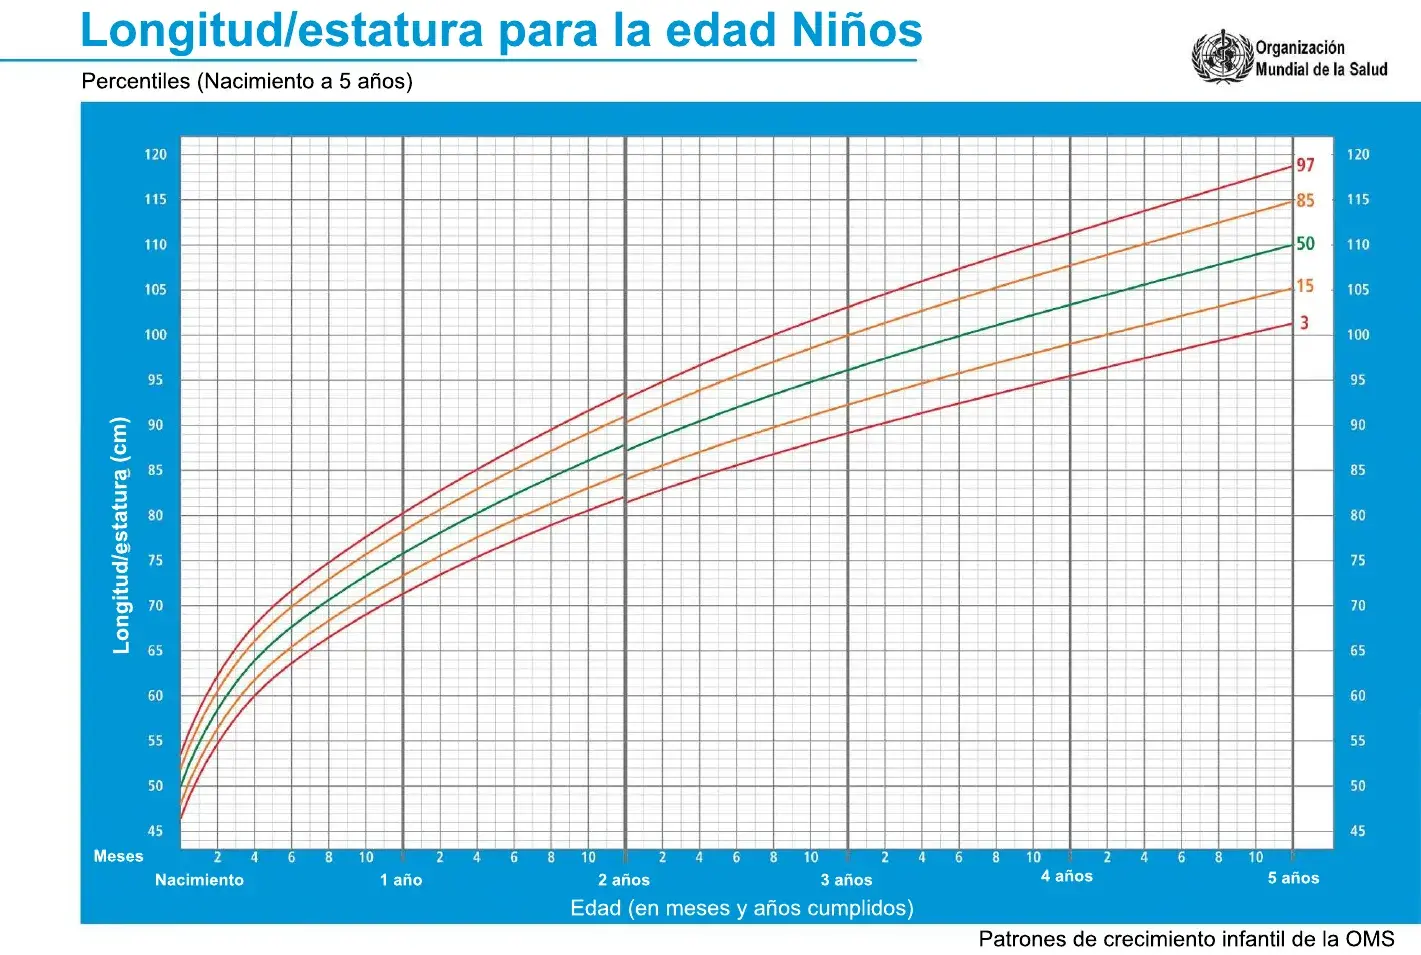 Grafica que muestra los percentiles de crecimiento comparando la estatura con la edad de los niños del nacimiento a los cinco años de edad